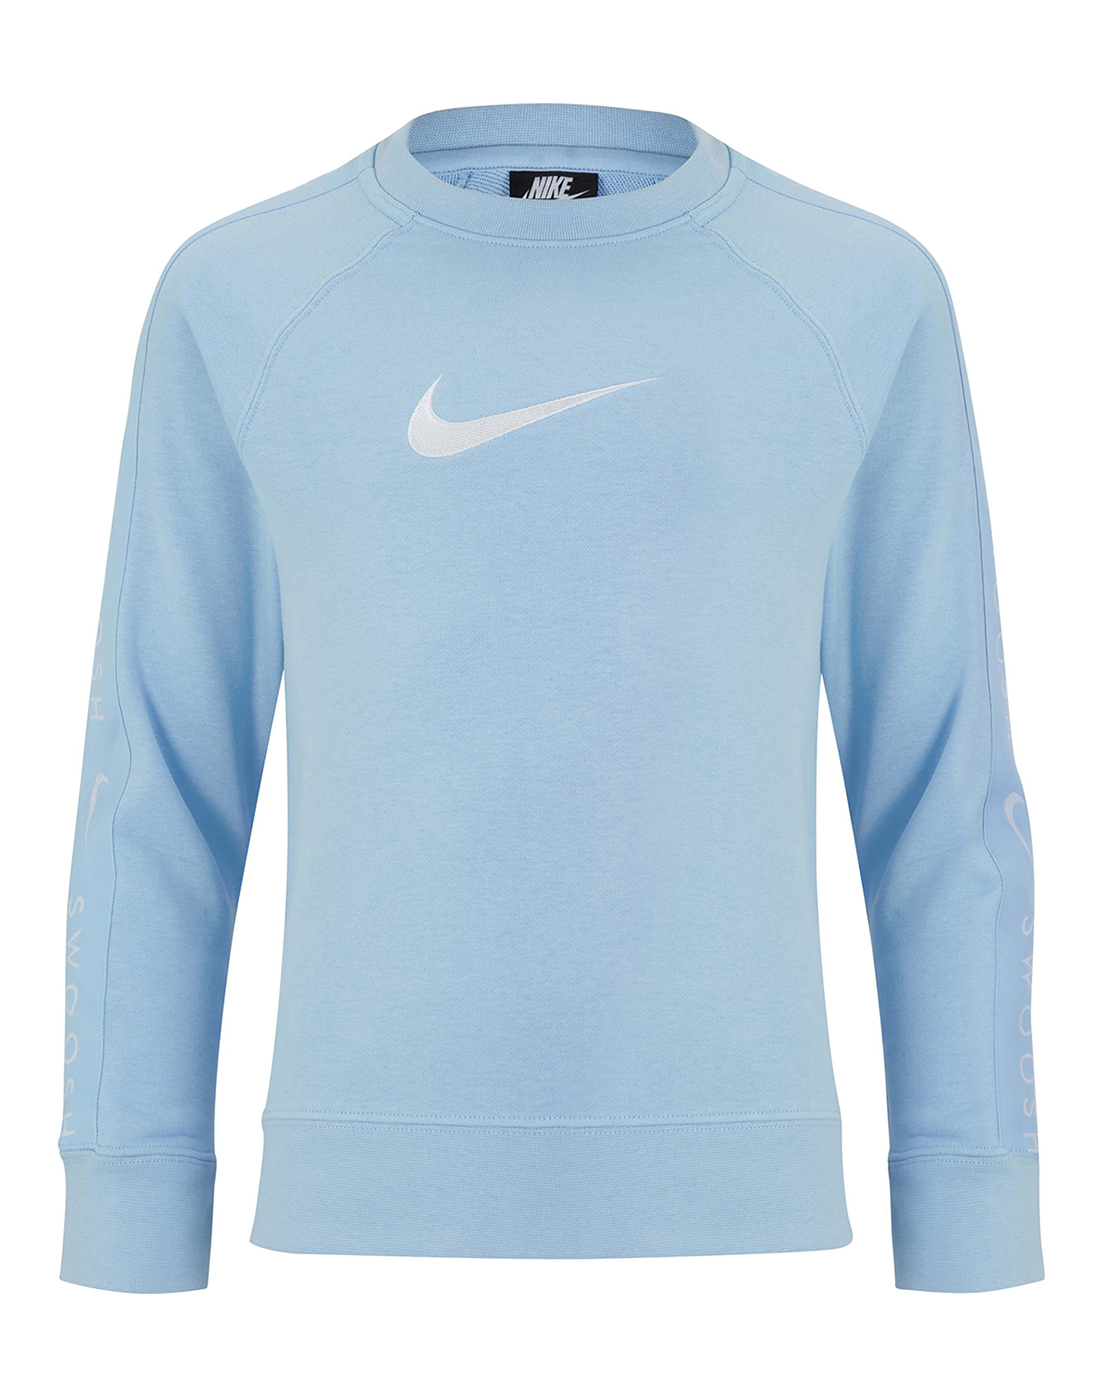 Nike Older Boys Fleece Swoosh Crewneck Sweatshirt - Blue | Life Style ...